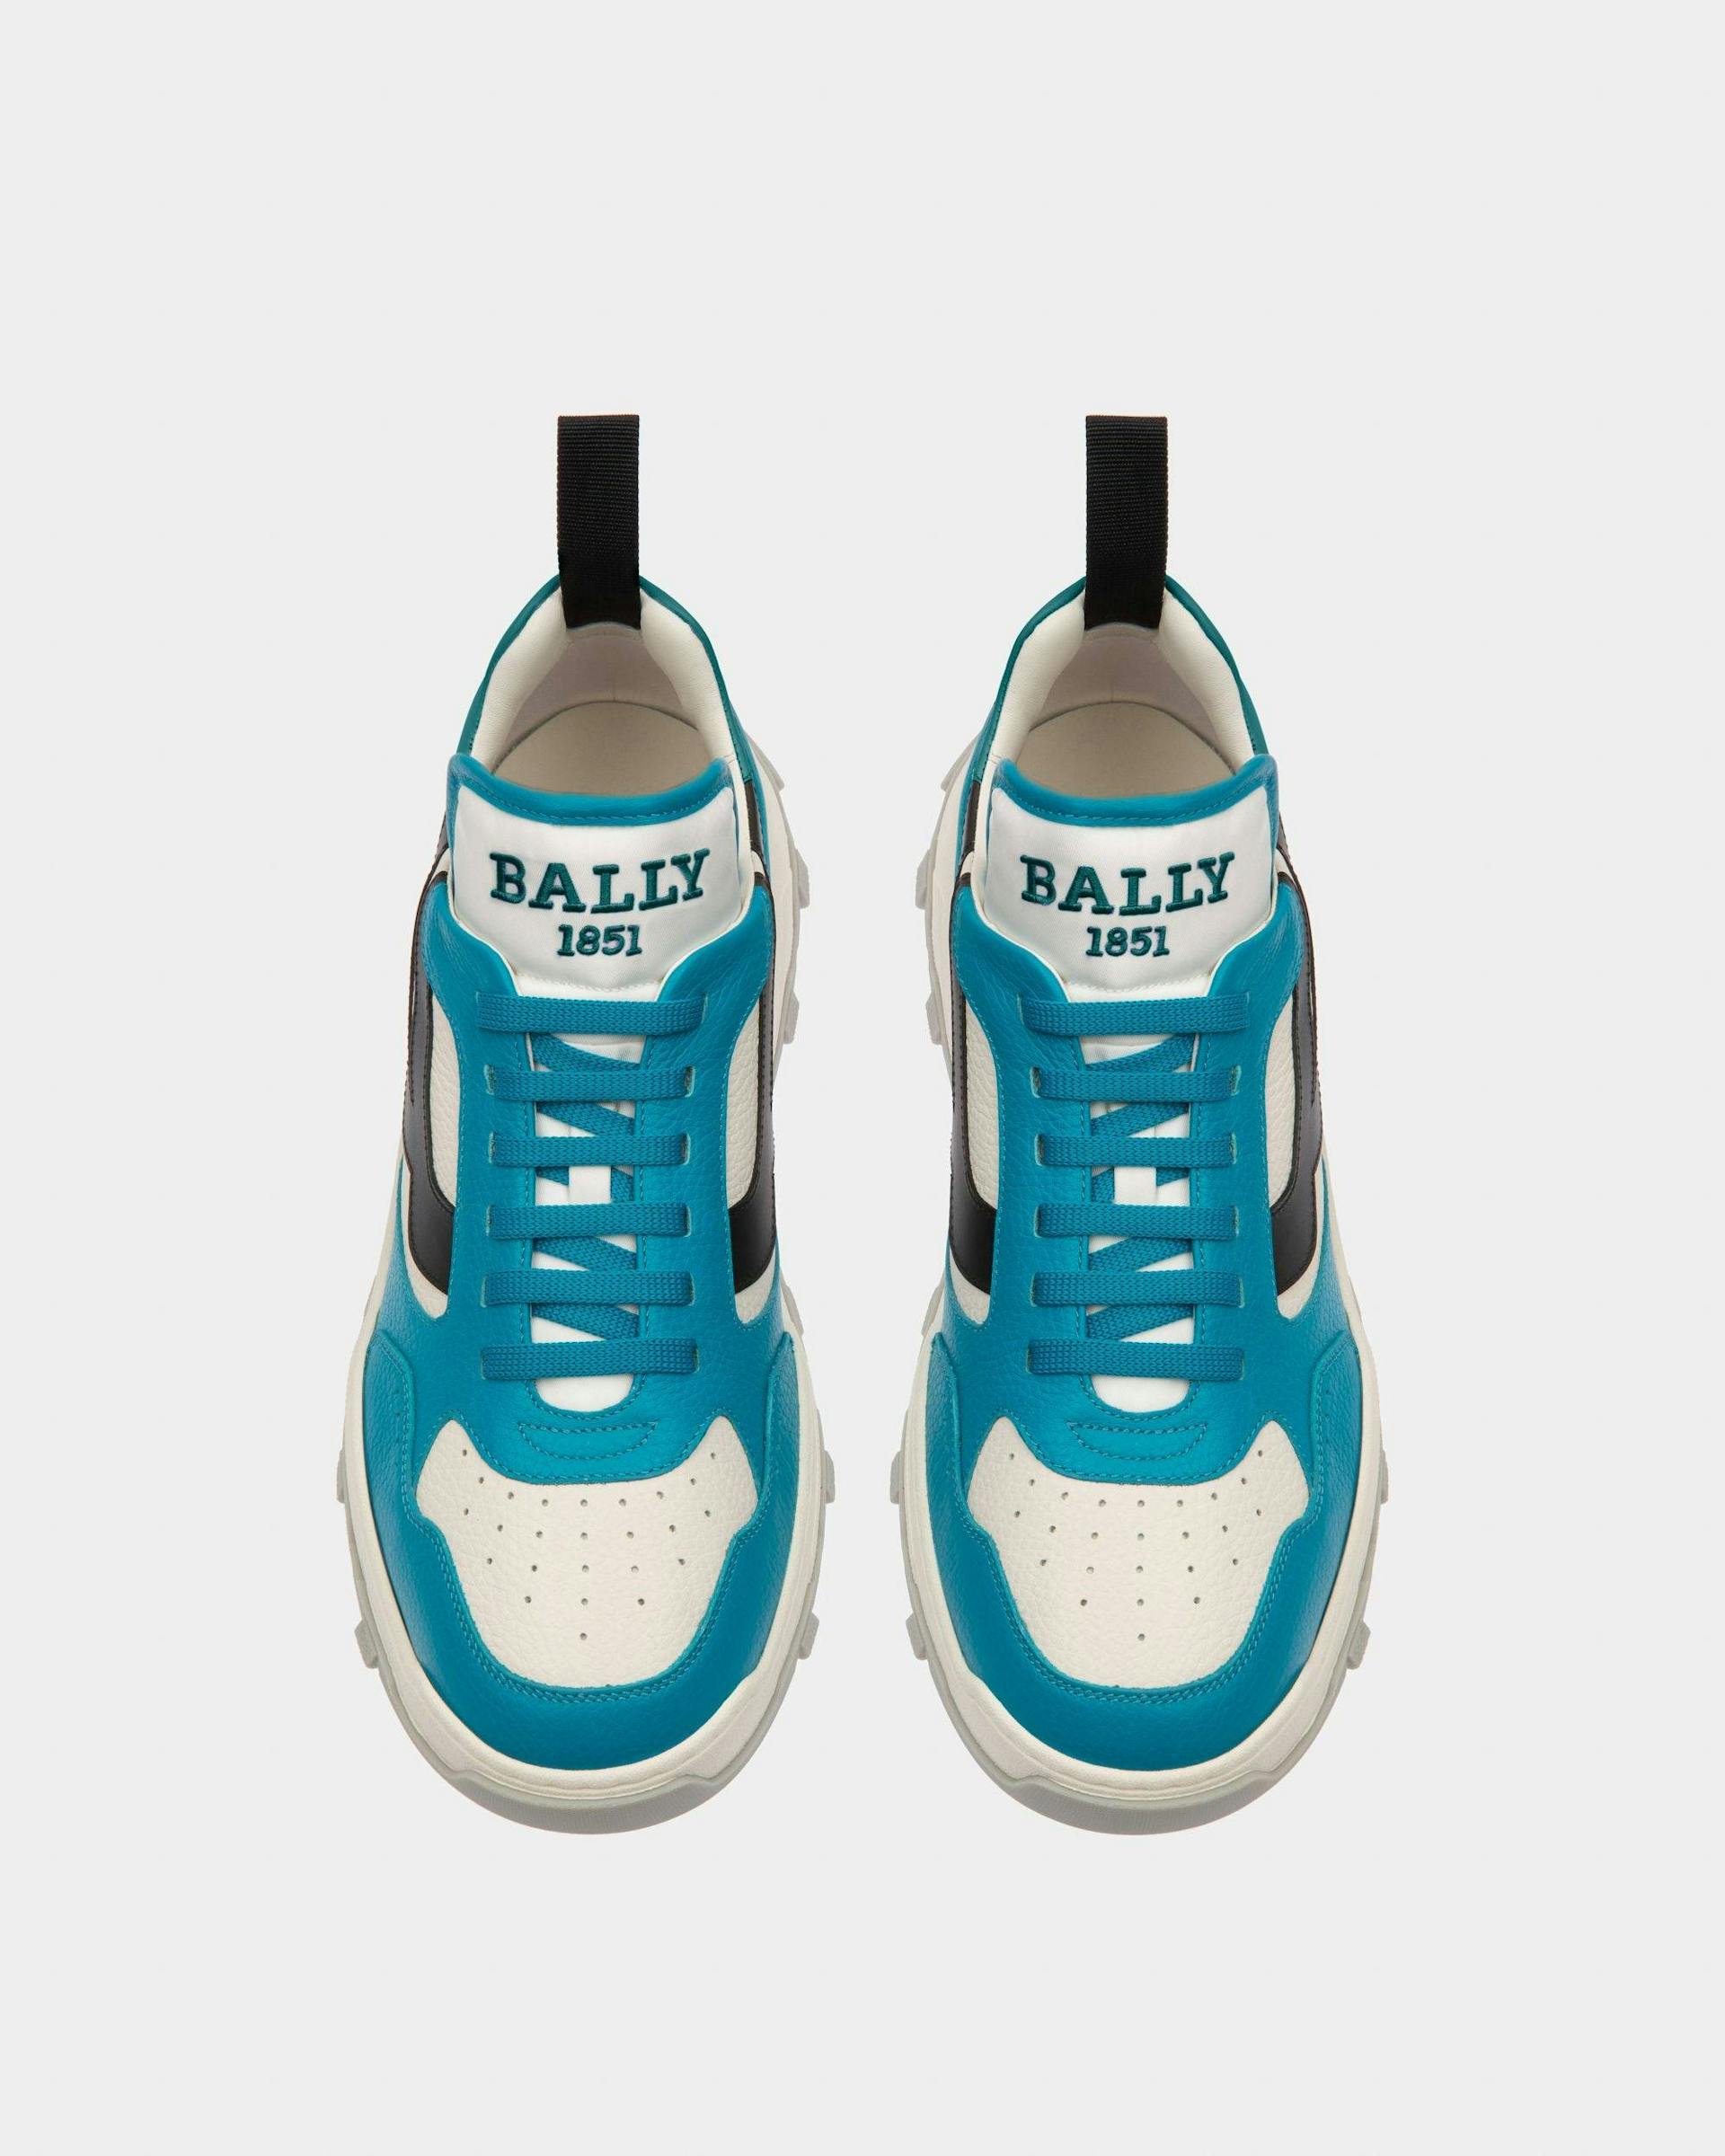 Holden Sneaker Aus Leder Und Stoff In Blau Und Weiss - Herren - Bally - 02